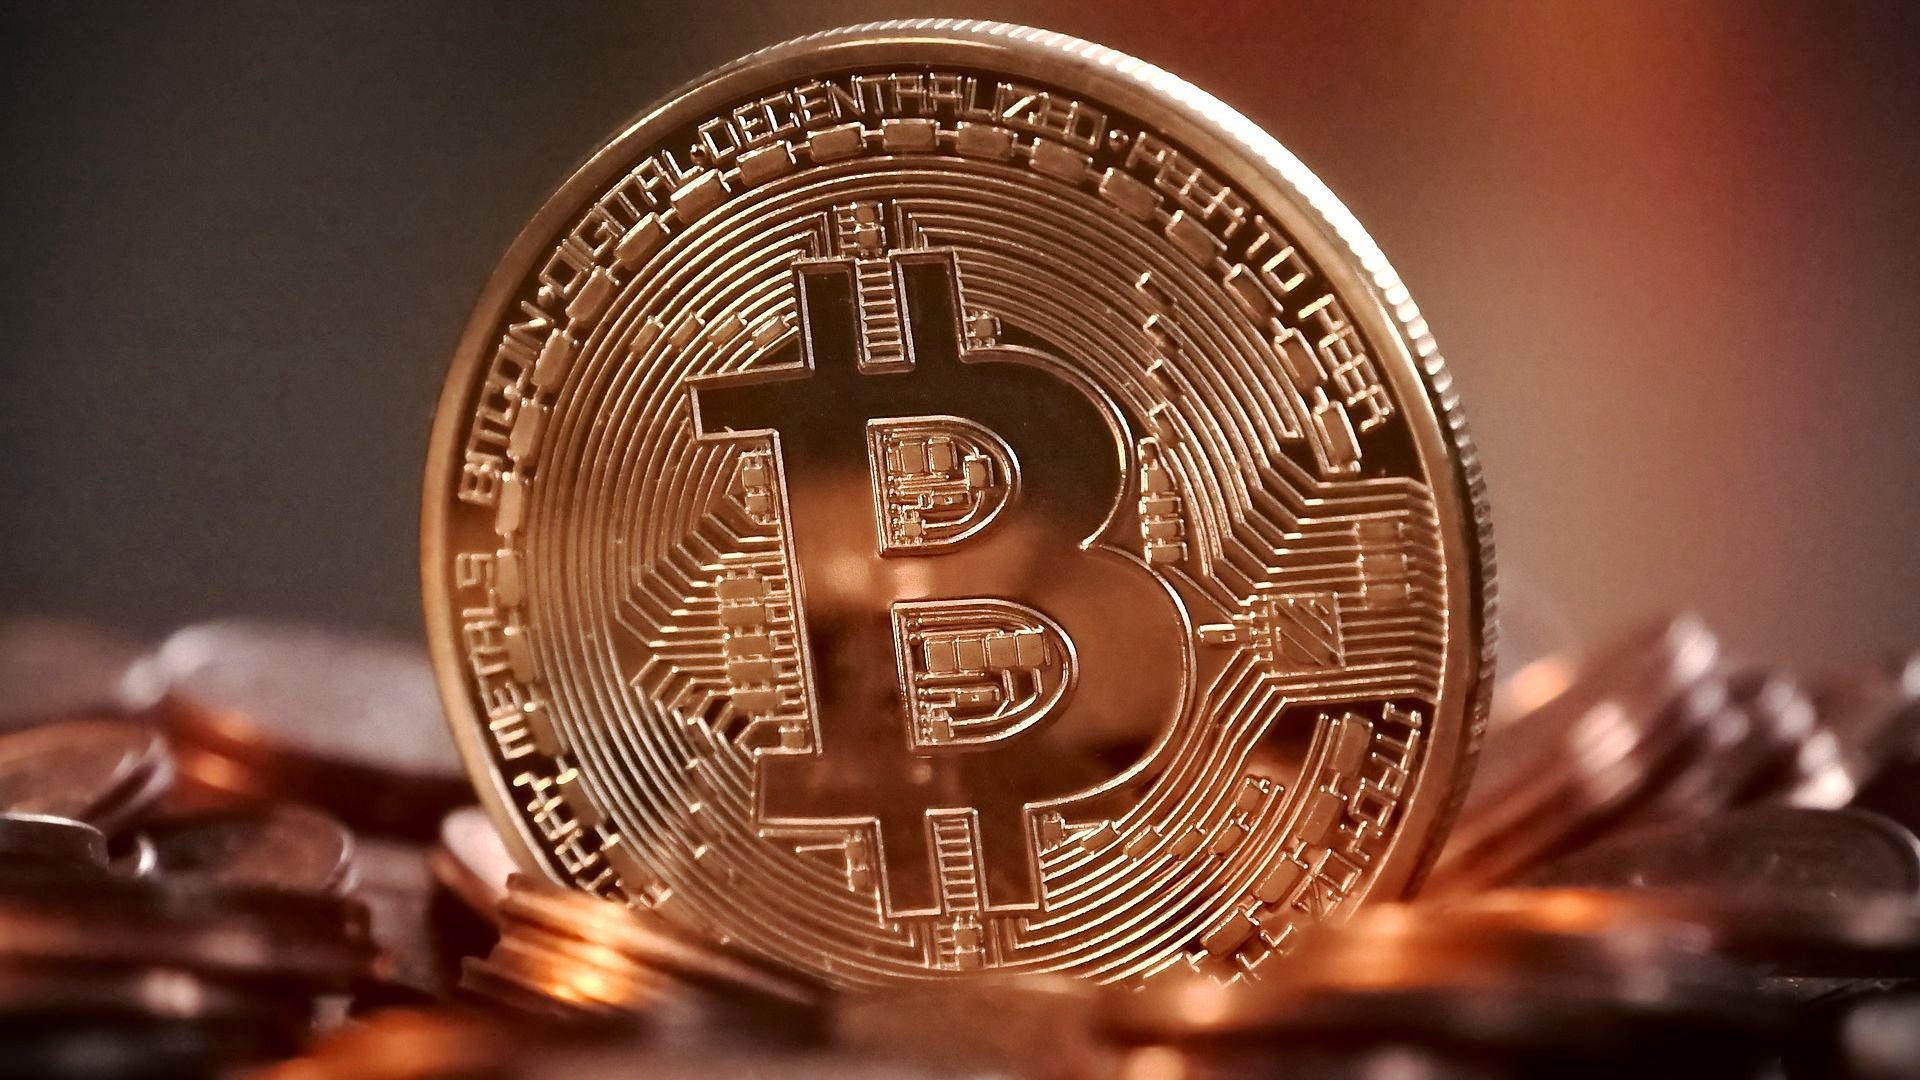 #Fataler Fehler: User schickt Bitcoin im Wert von 1,5 Millionen Dollar an falsche Adresse